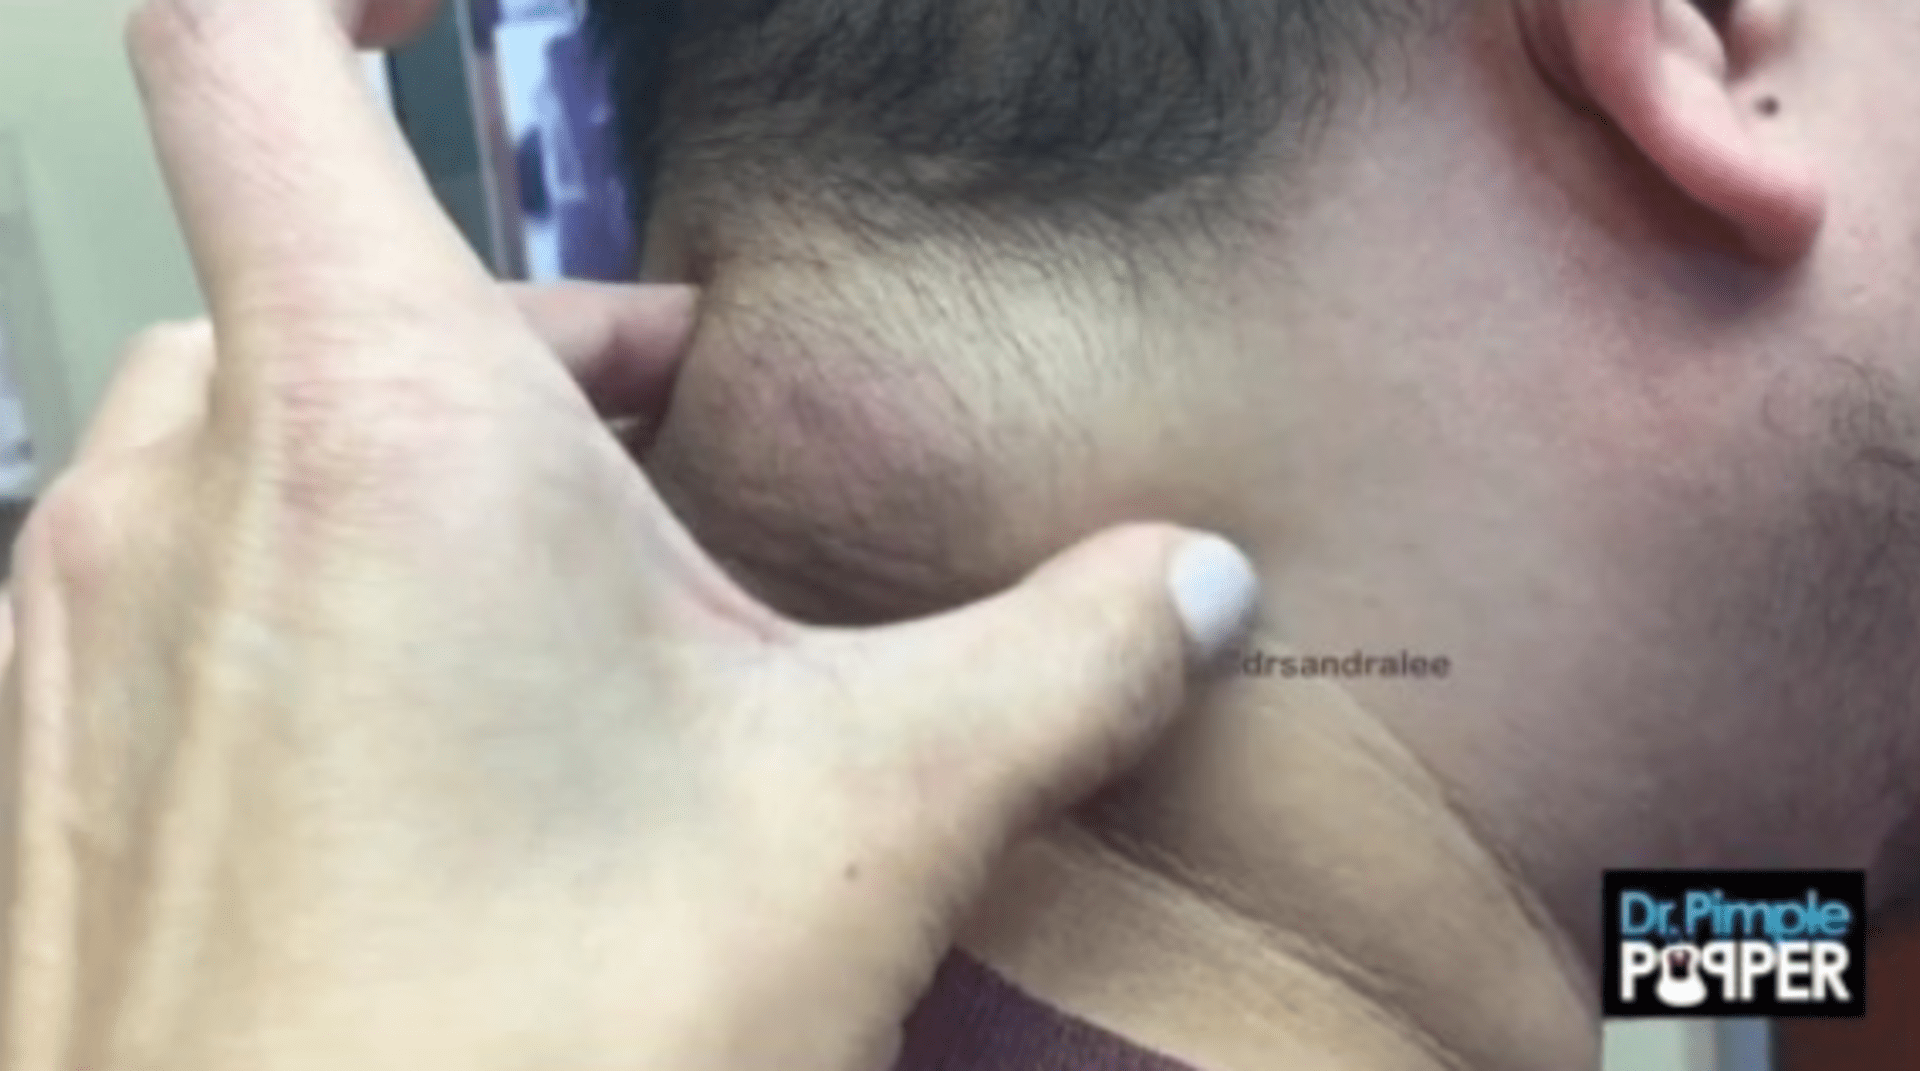 Doktorka odstranila muži obří cystu z krku